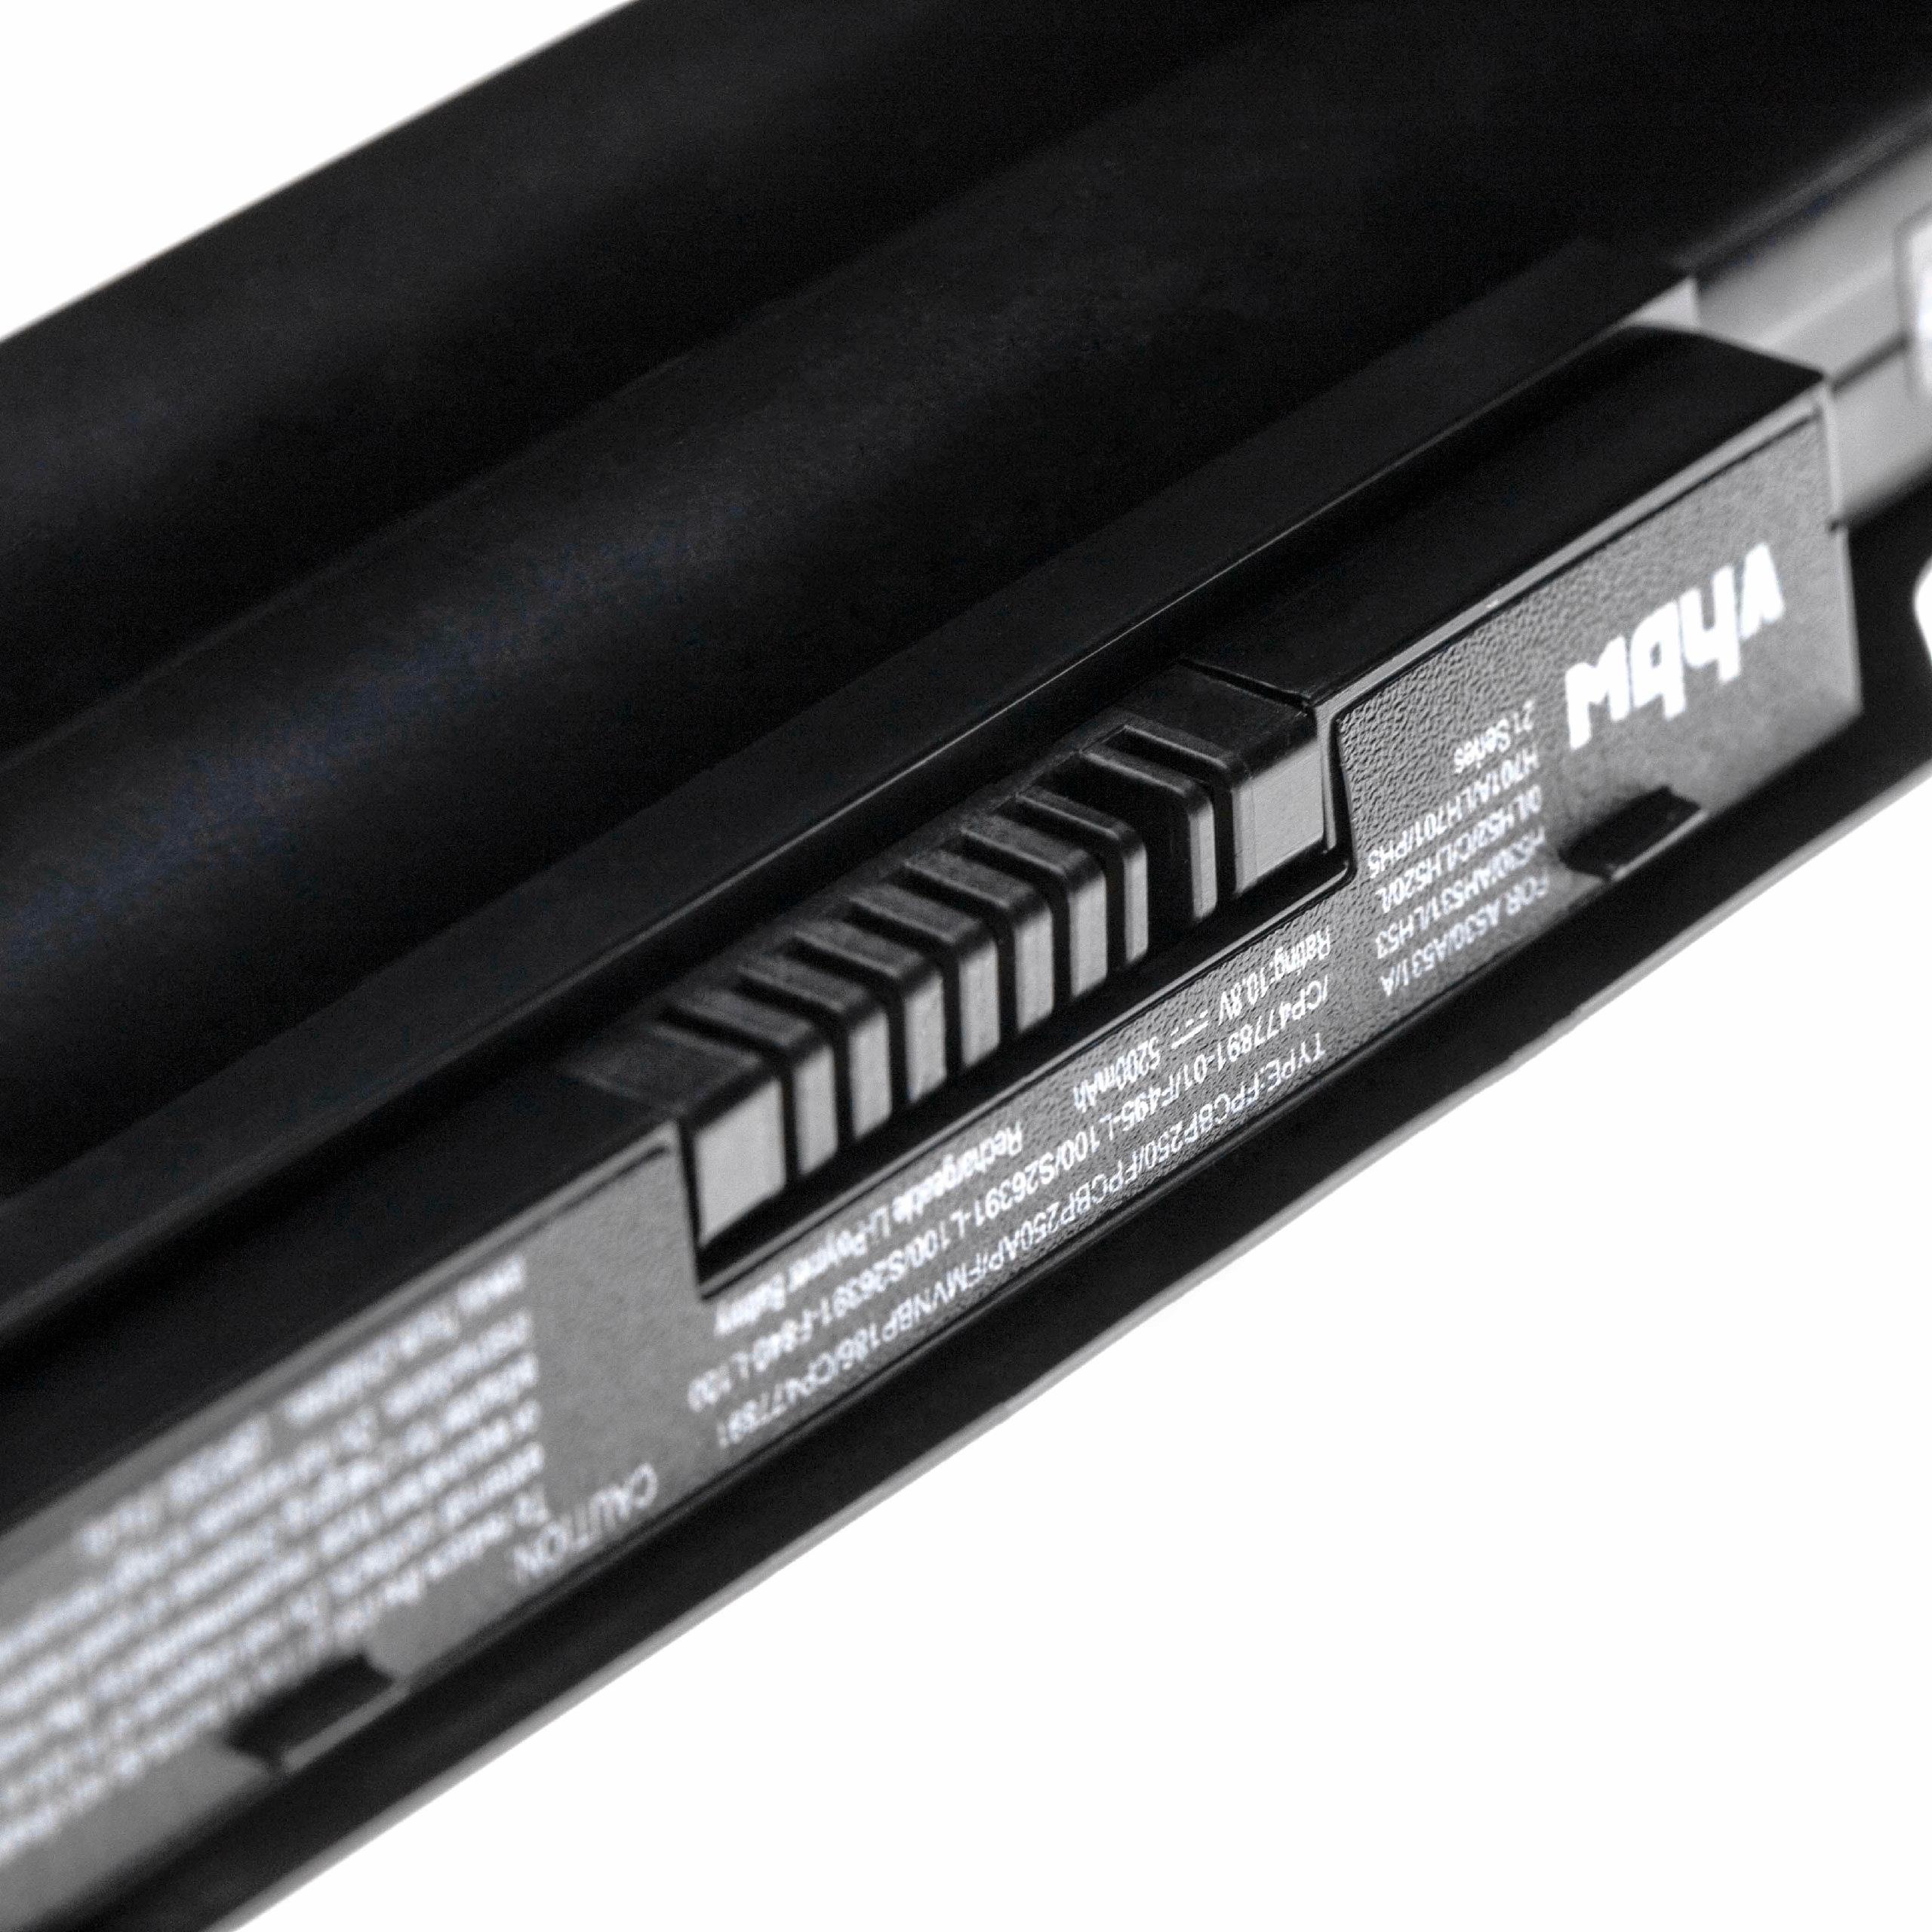 Batterie remplace Fujitsu Siemens CP477891-01 pour ordinateur portable - 5200mAh 10,8V Li-polymère, noir